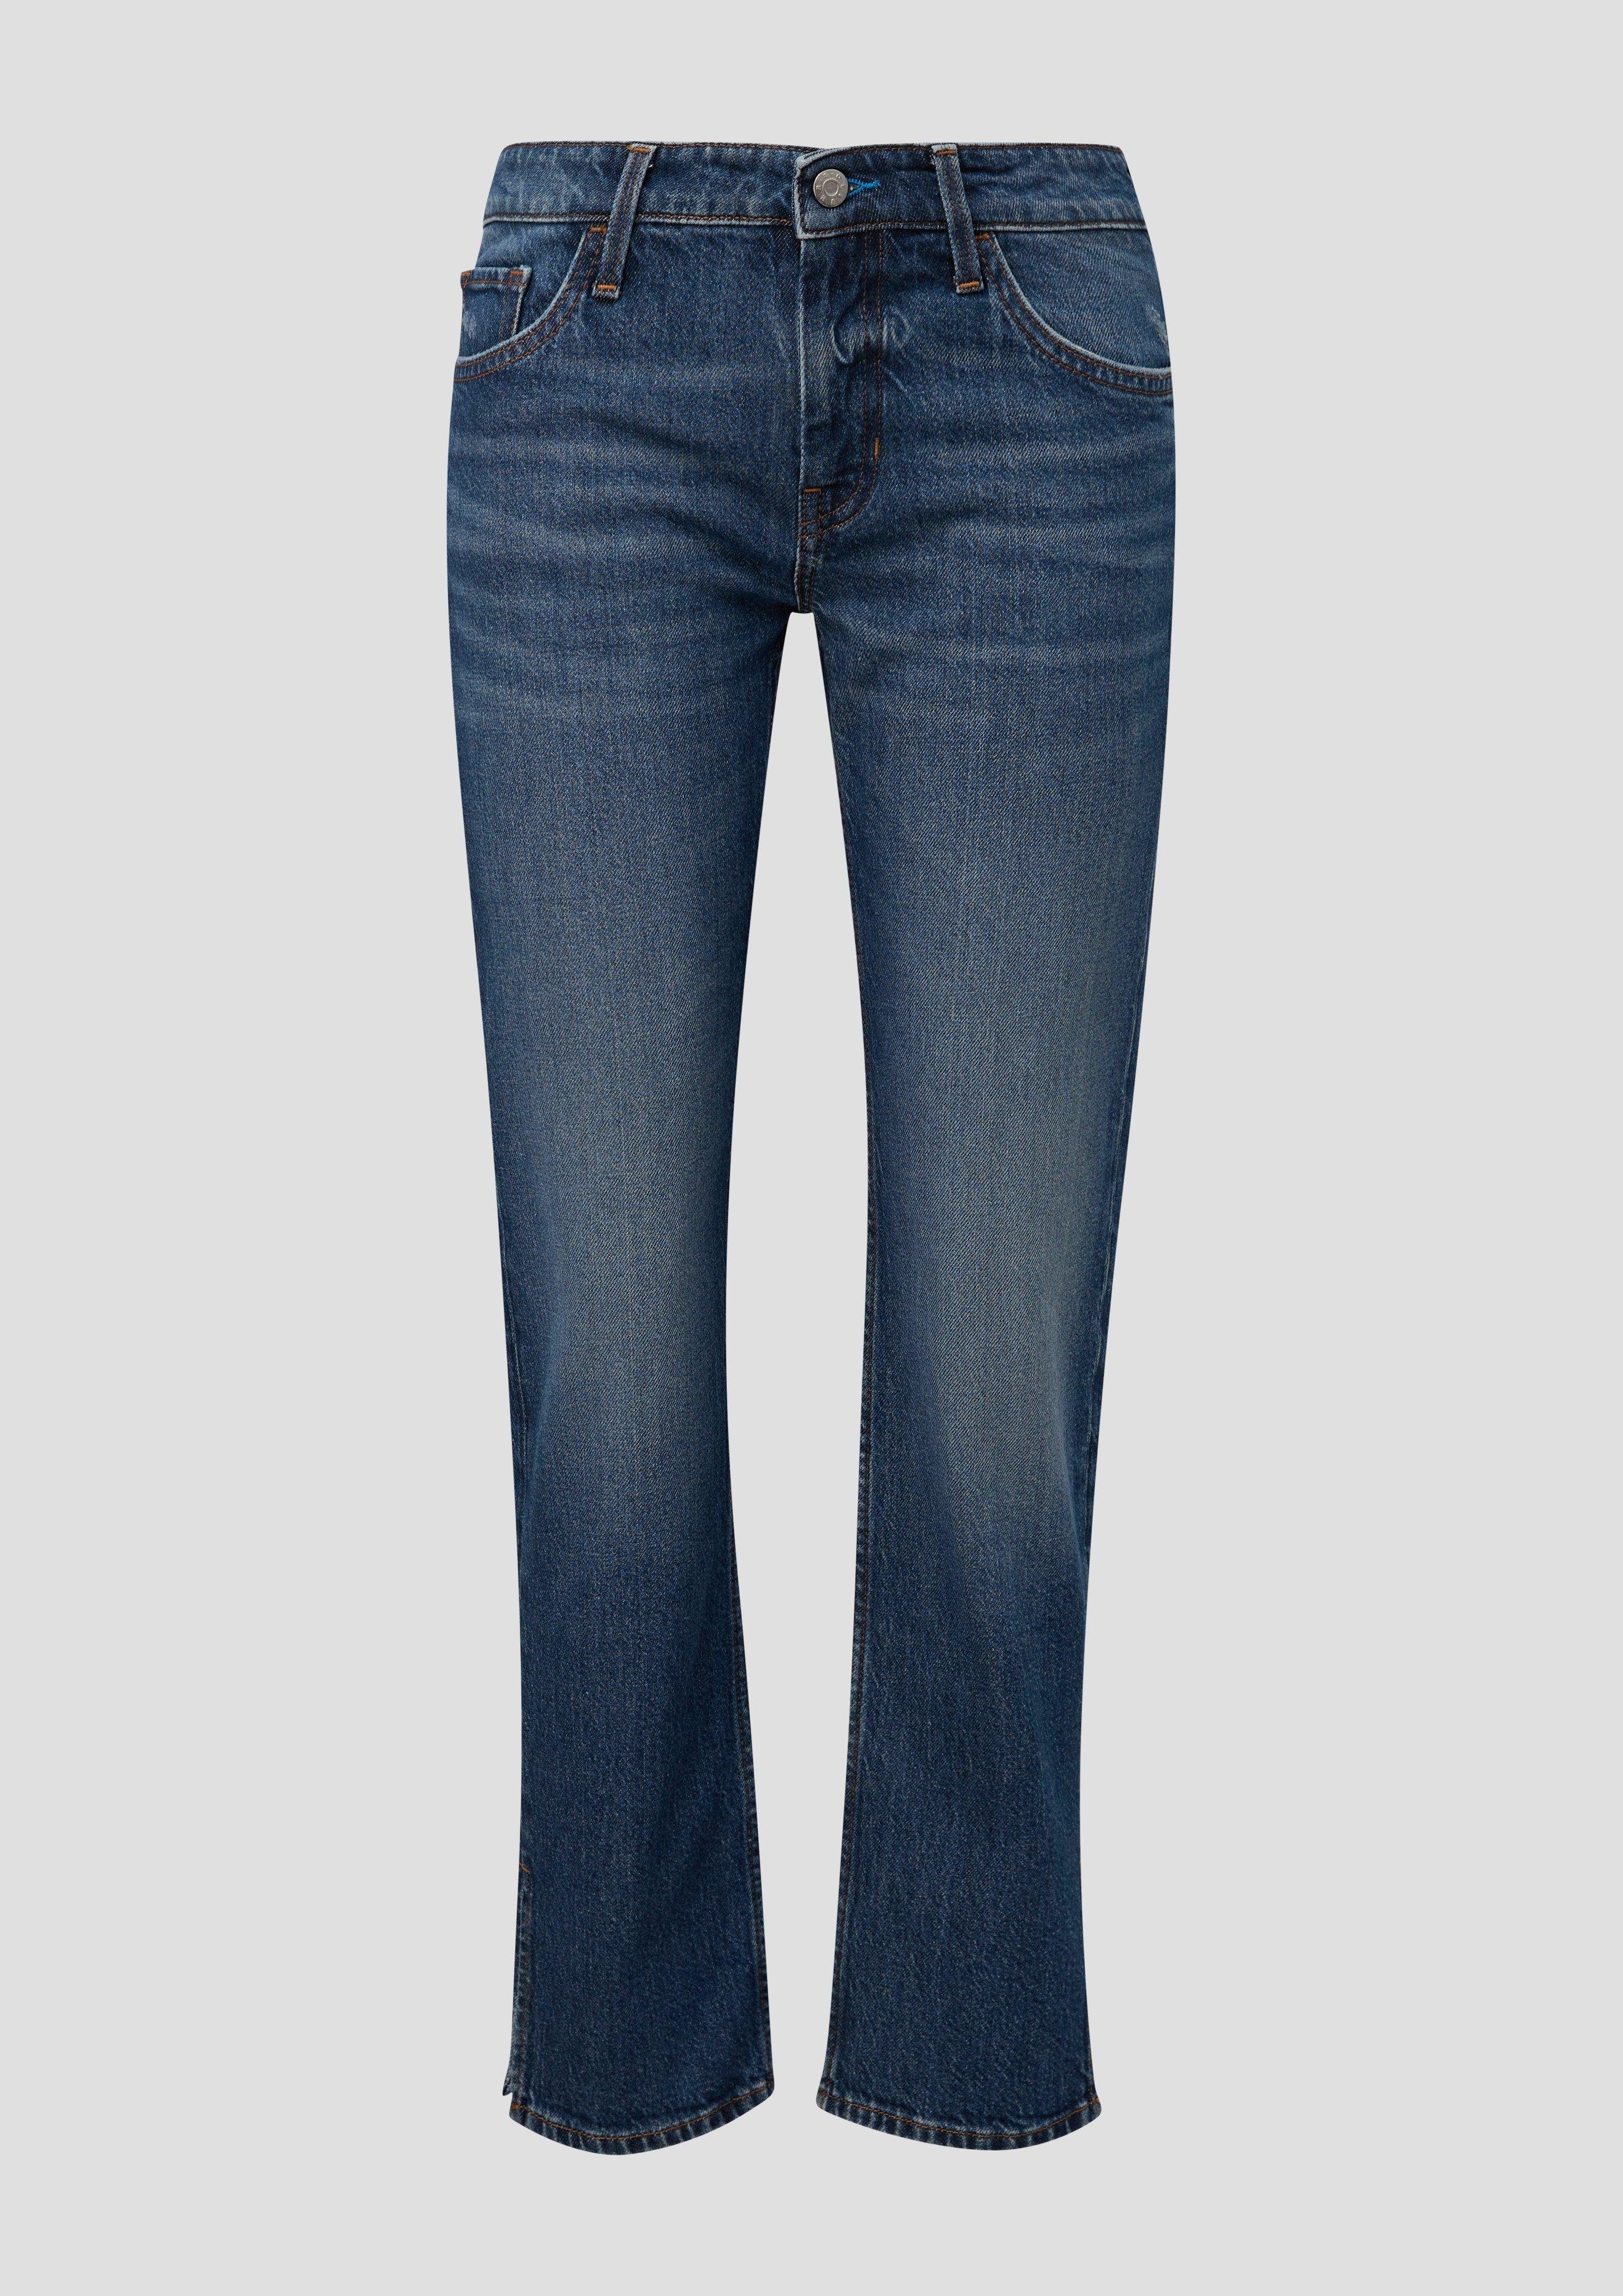 s.Oliver / Straight Rise / Regular Low Fit 5-Pocket-Jeans Jeans Karolin Label-Patch / Leg